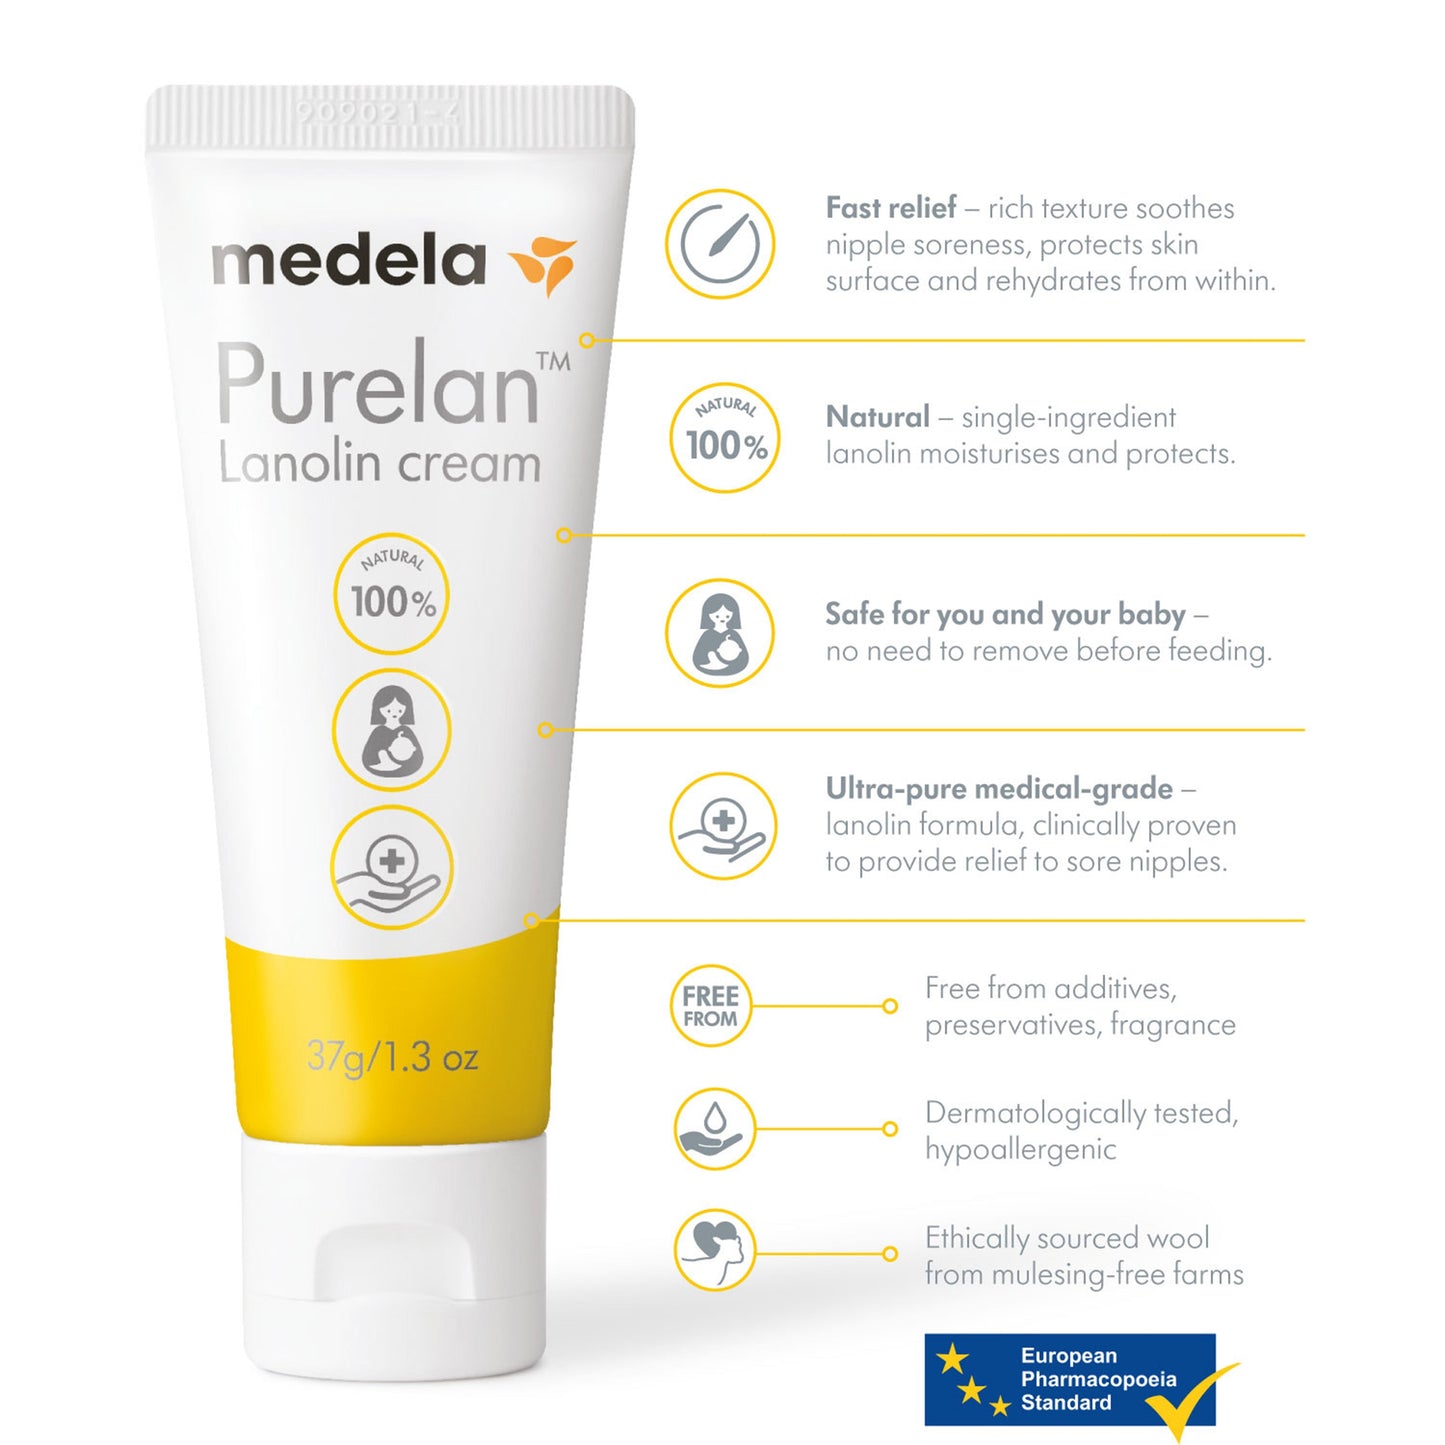 Medela Purelan Lanolin Cream, 37g/1.3 fl oz Tube